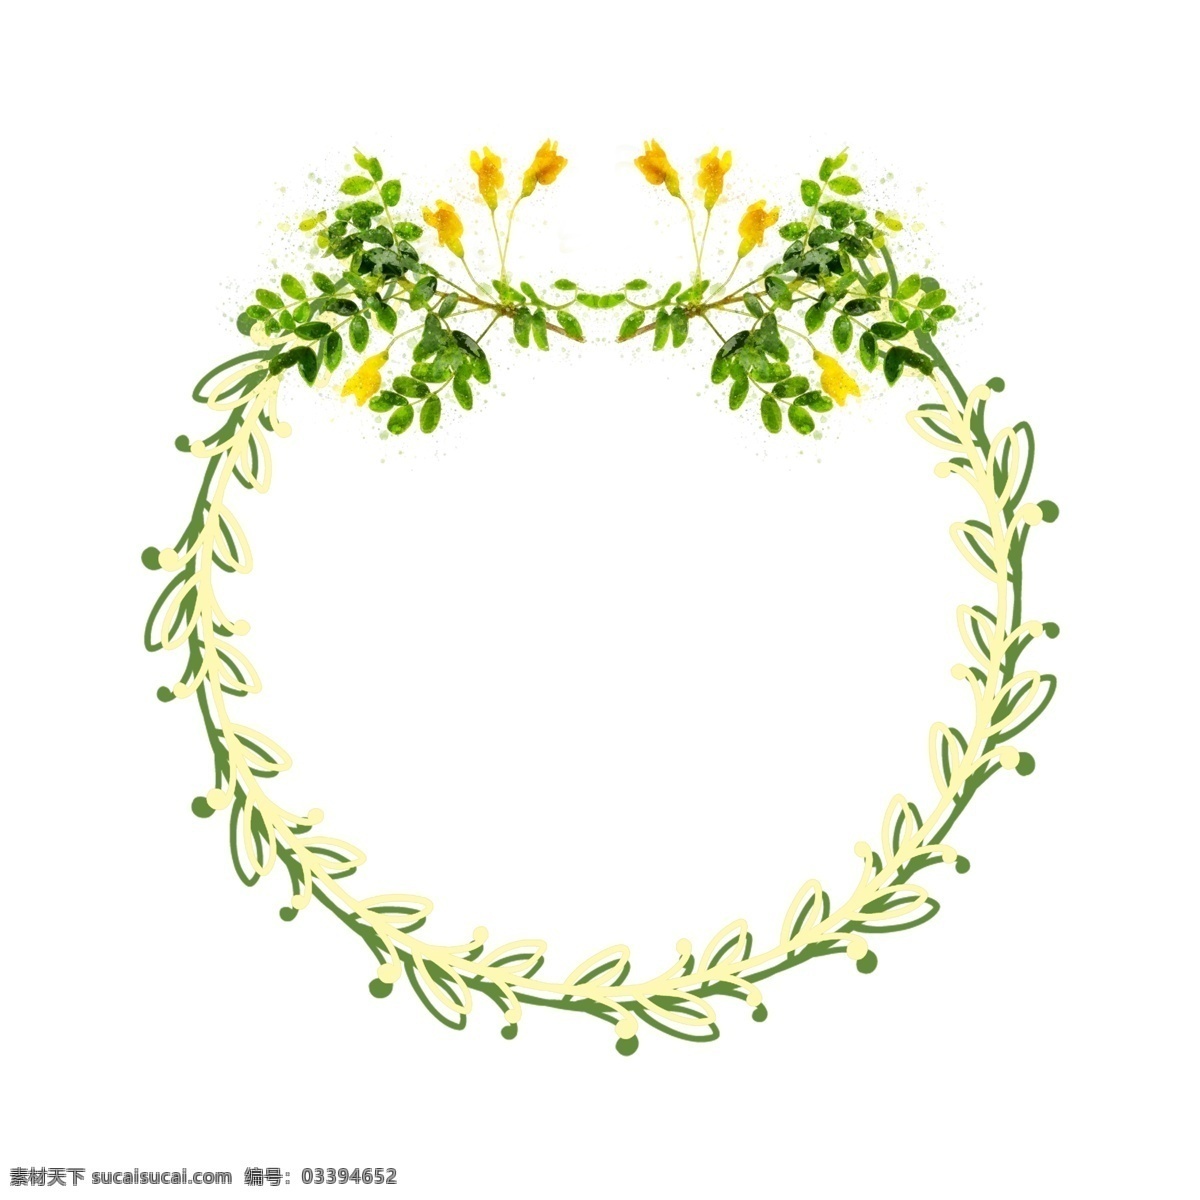 手绘 圆形 植物 花卉 绿色 水彩 边框 元素 原创 圆形边框 花卉边框 手绘边框